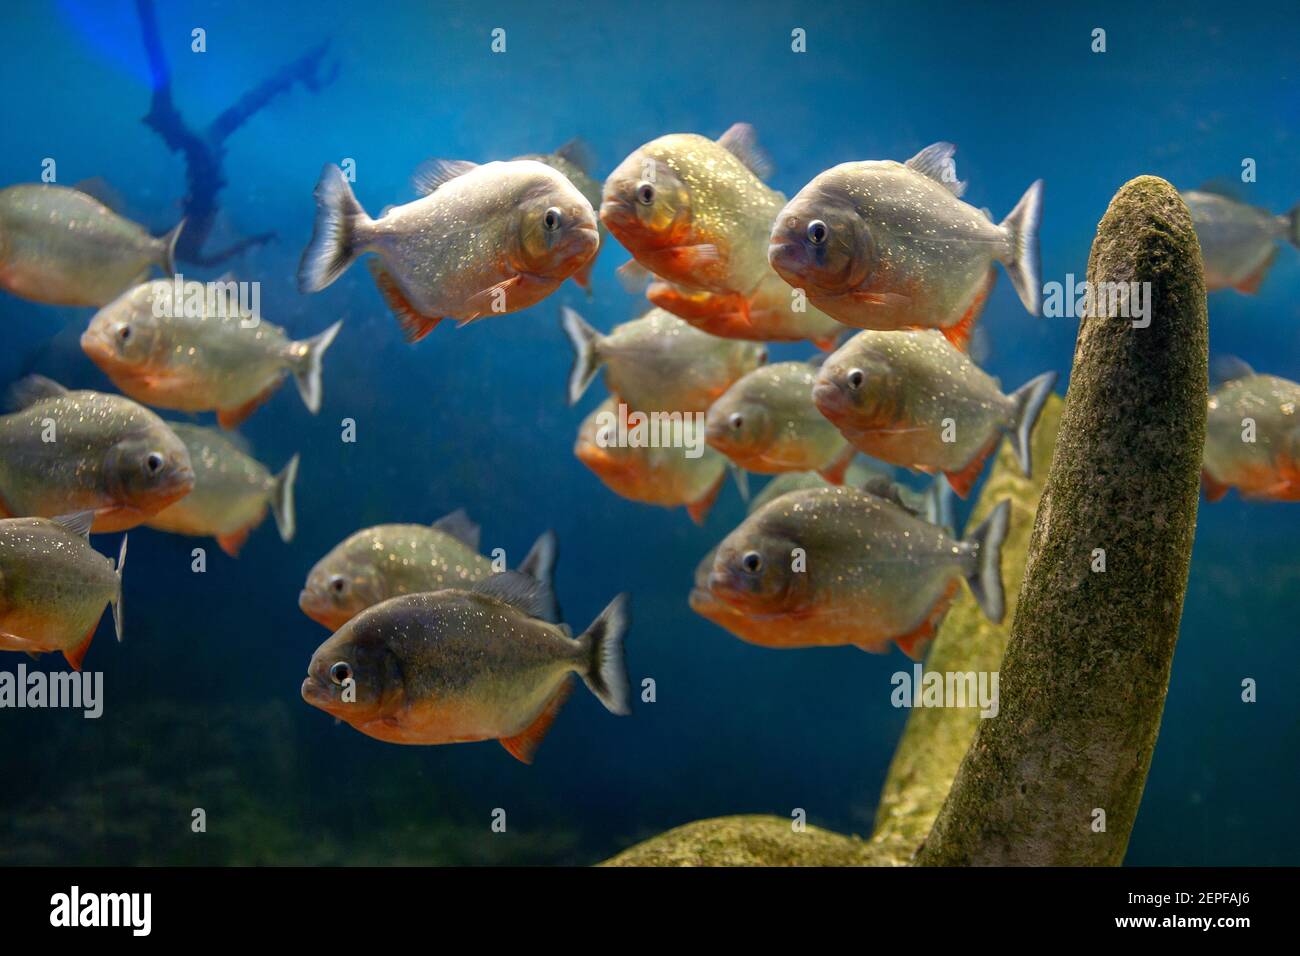 grupo de peces piranha rojos en piedras submarinas con fondo azul gradiente. animales silvestres. peces amazónicos peligrosos y agresivos Foto de stock